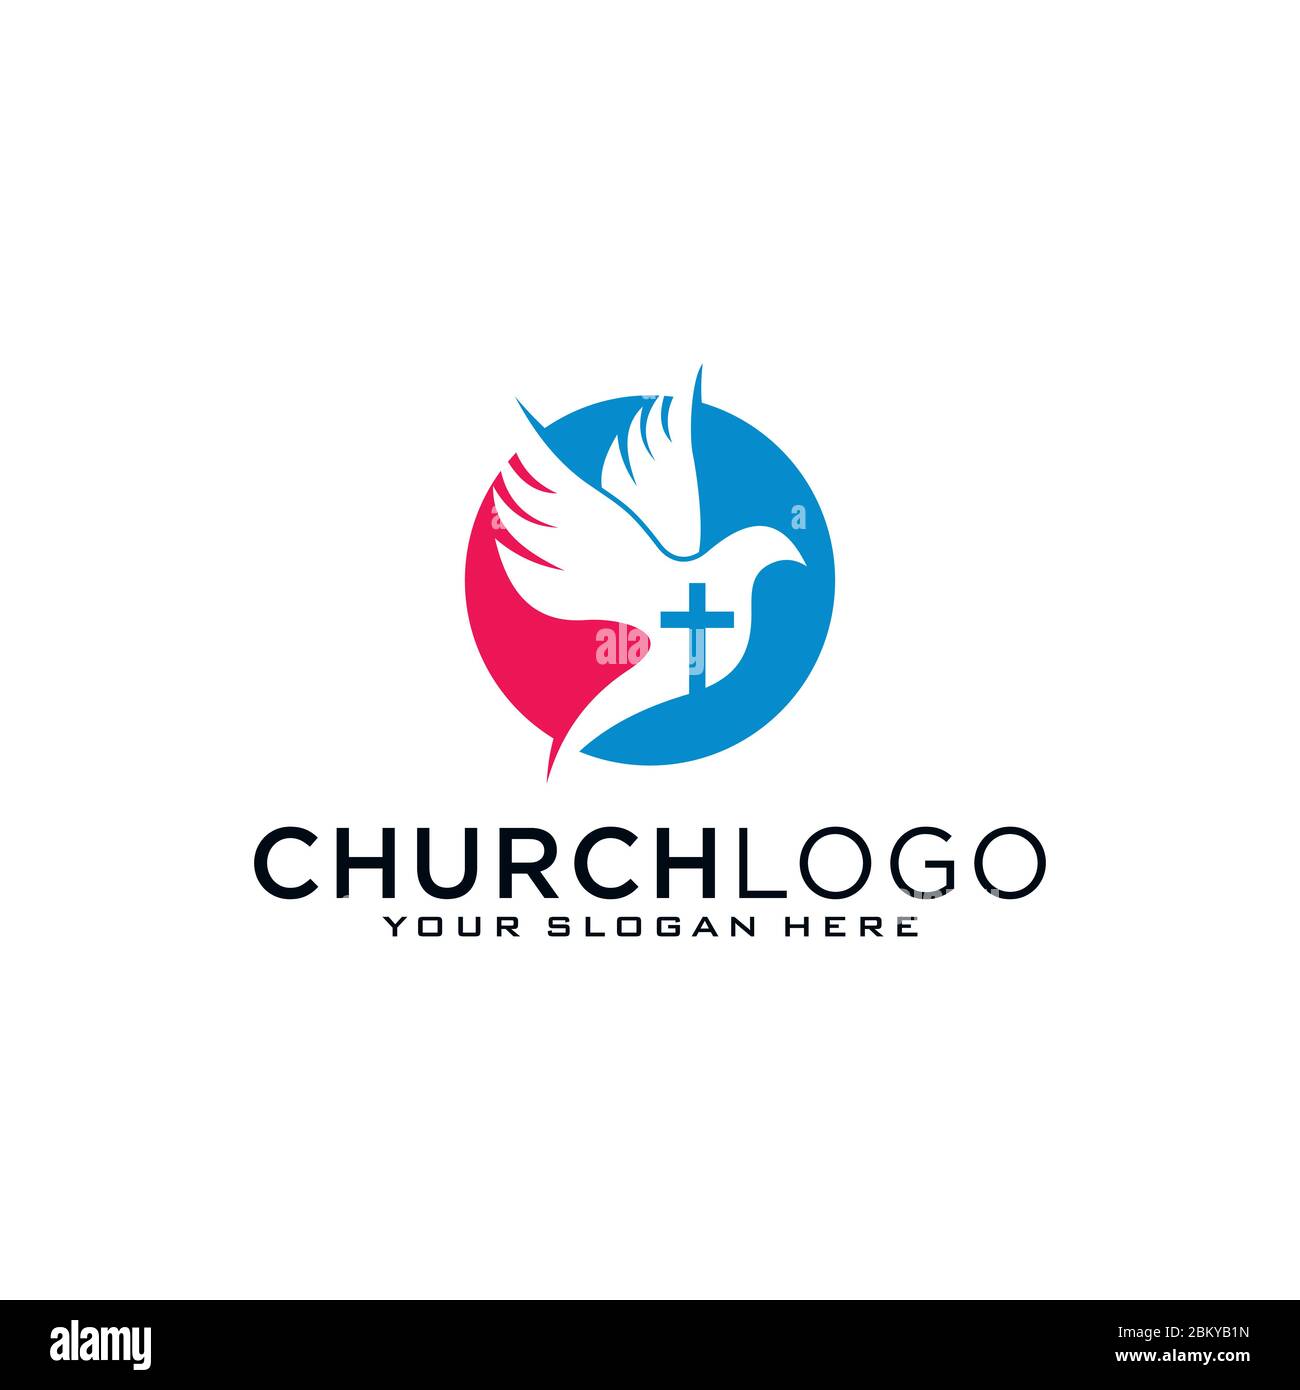 Logotipo de la Iglesia. Símbolos cristianos. La Cruz de Jesús, el fuego del Espíritu Santo y la paloma. Ilustración del Vector